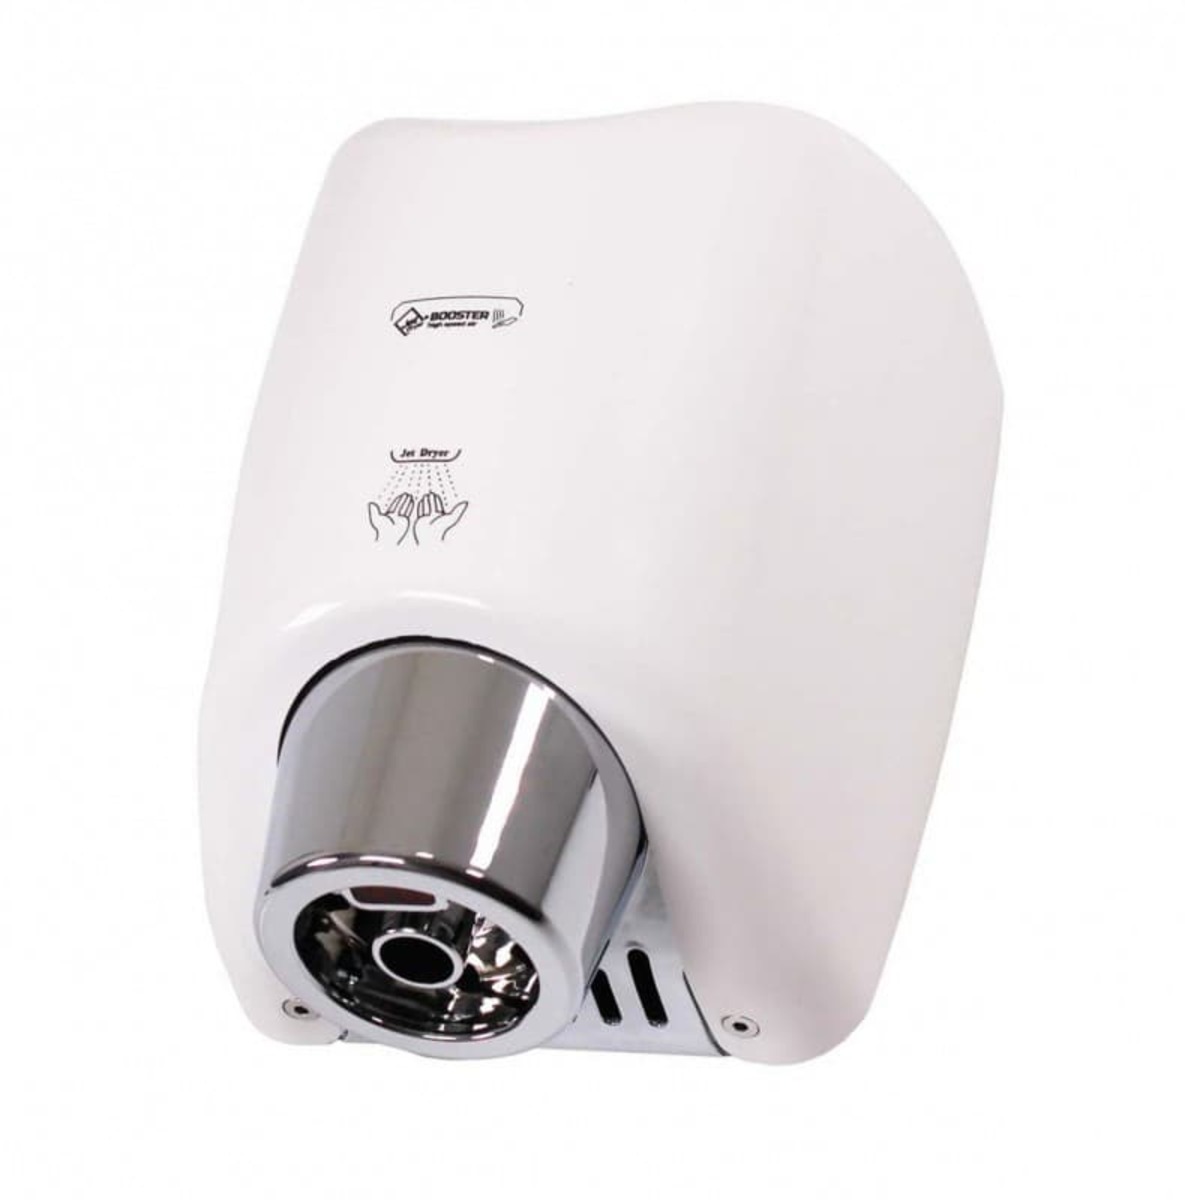 Bezdotykový vysoušeč rukou Jet Dryer BOOSTER bílý 8596220009326 Jet Dryer